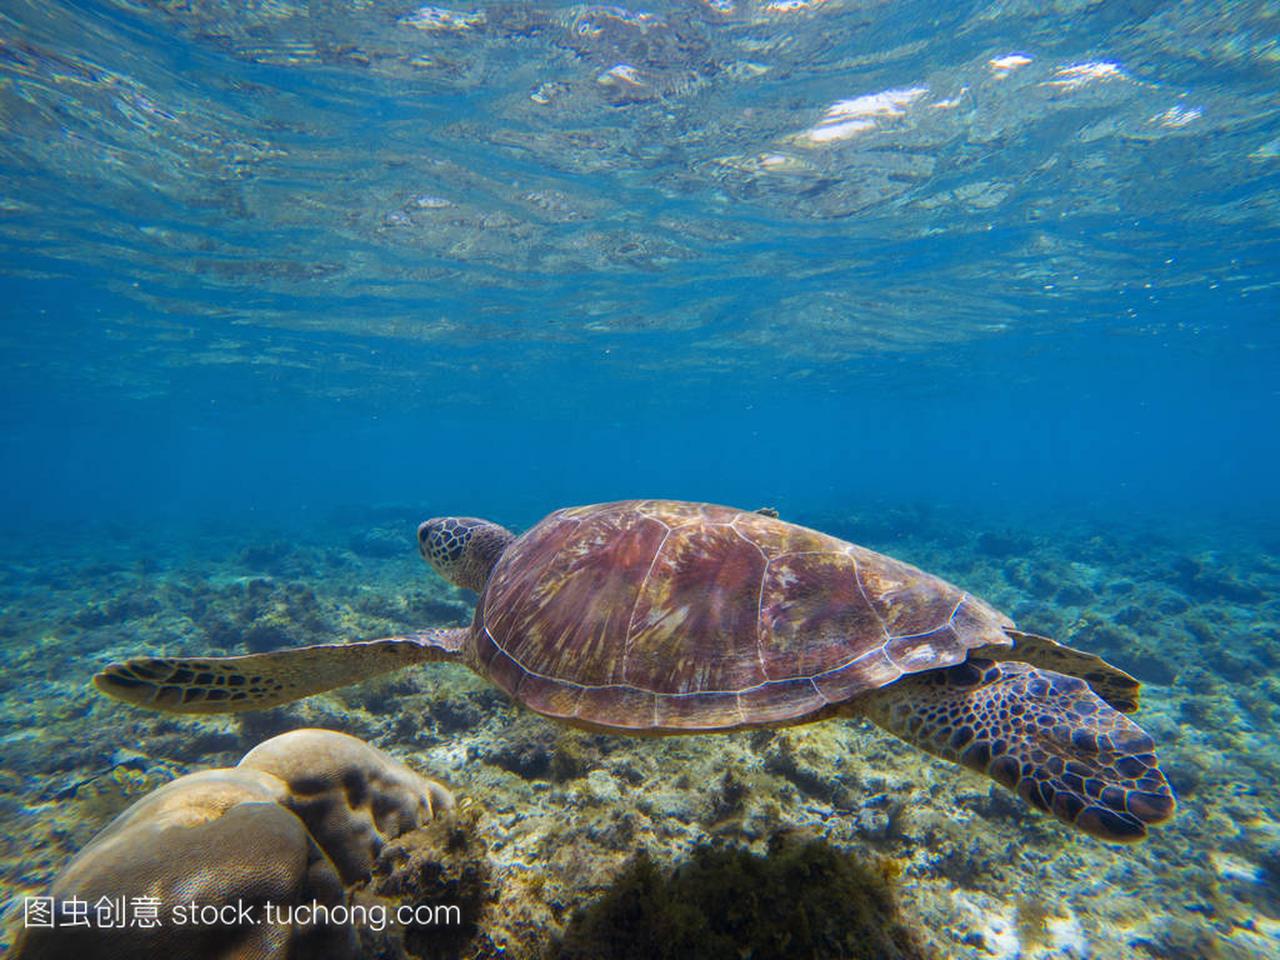 可爱的海龟水下照片。橄榄绿色海龟在热带海滨